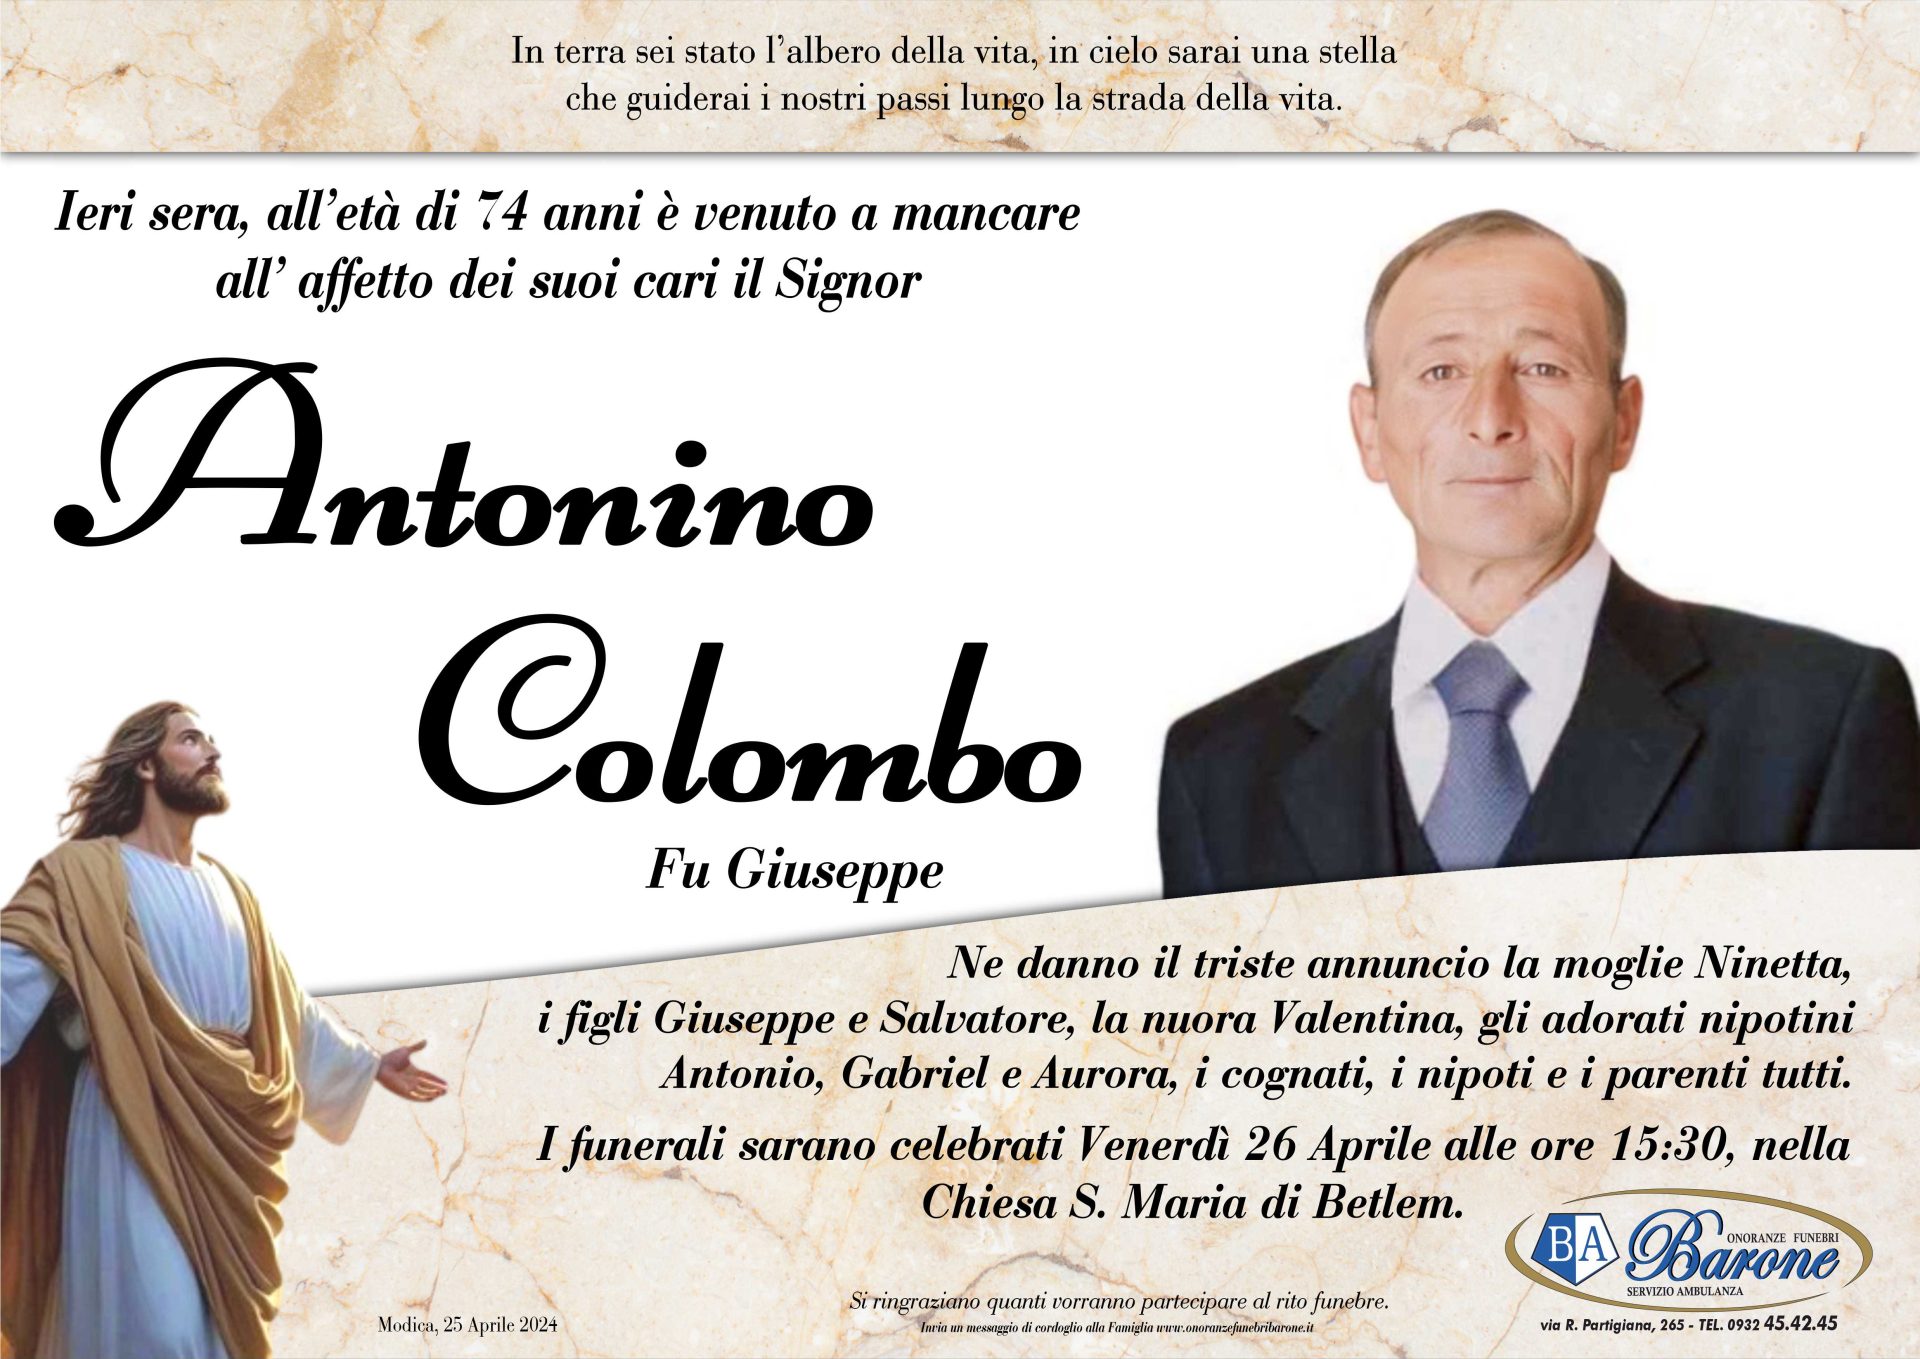 Antonino Colombo